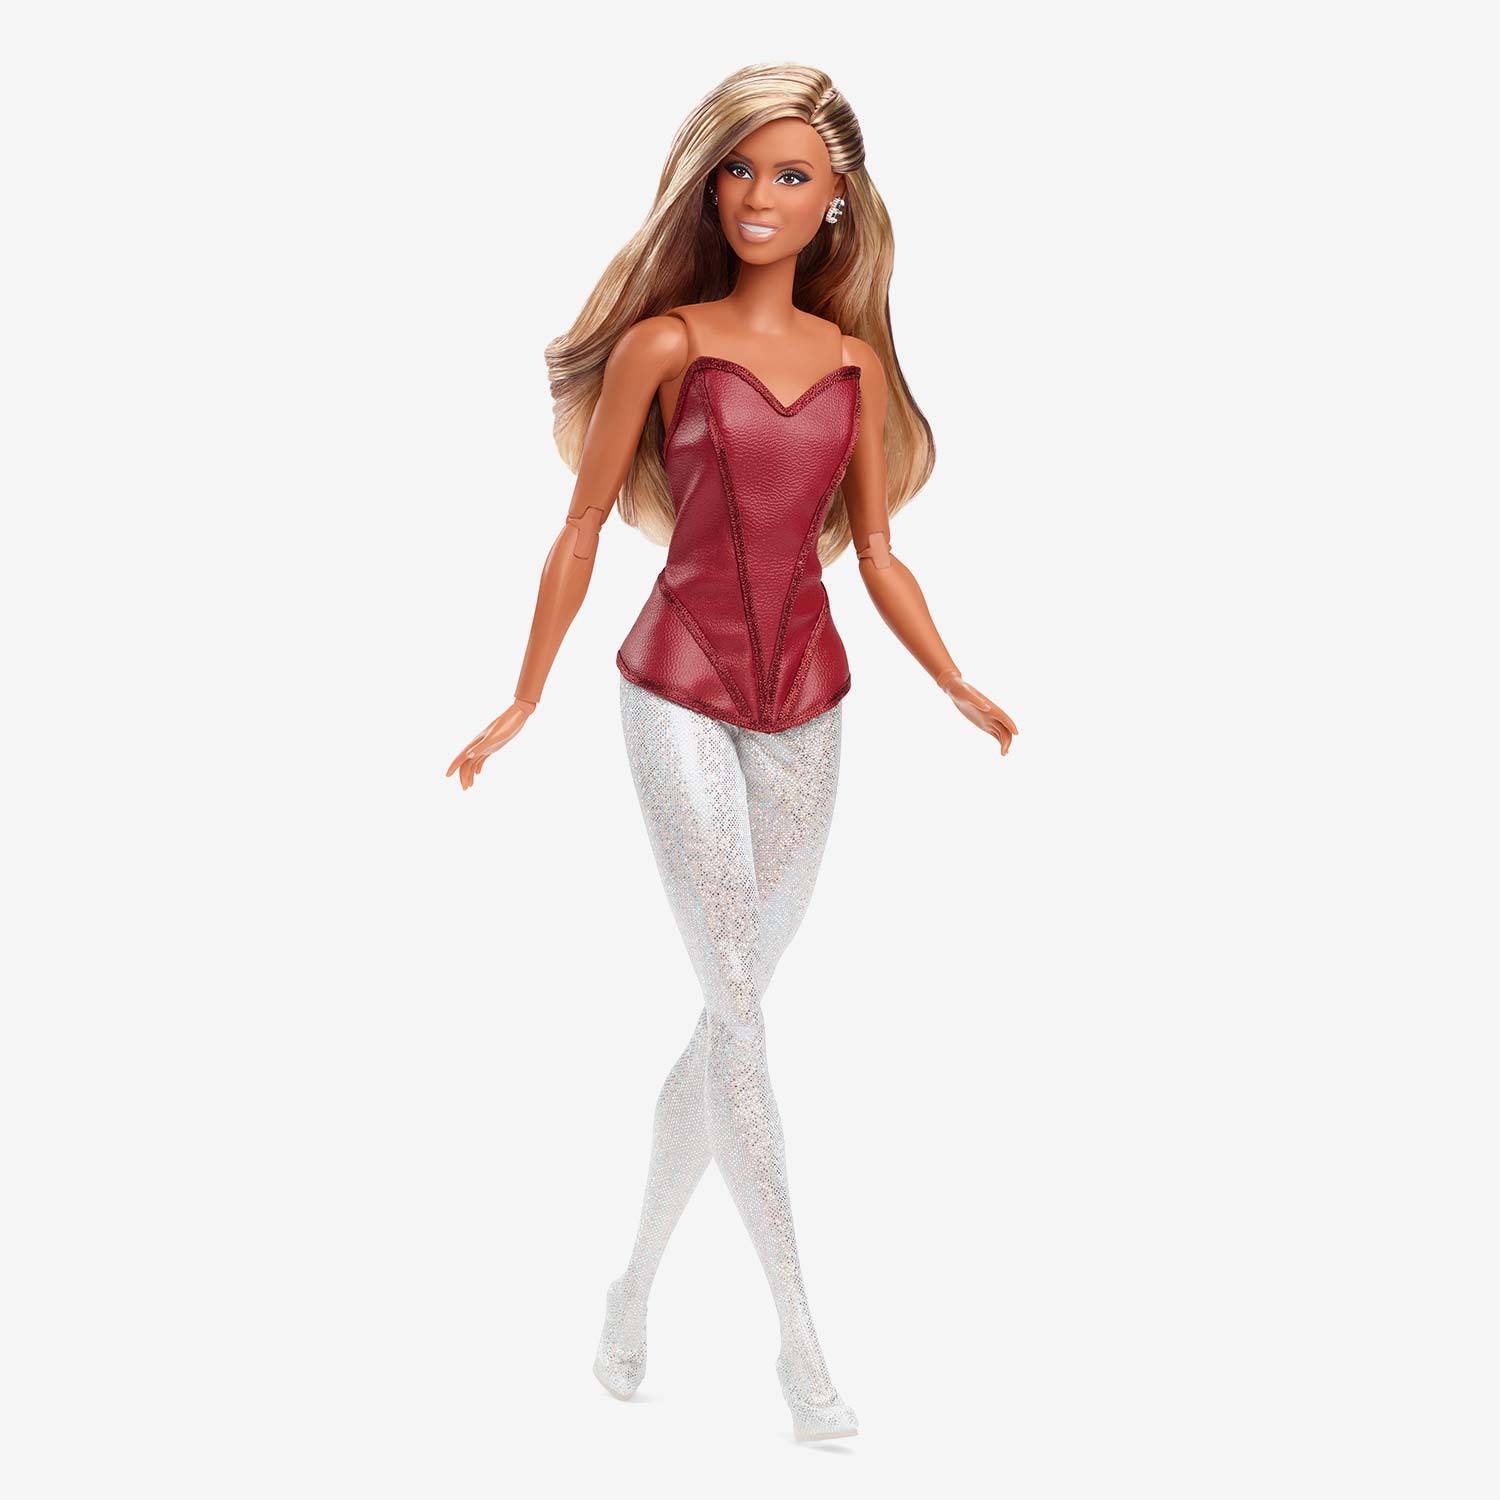 Prva transrodna lutka puštenu u prodaju: Barbie pomiče granice